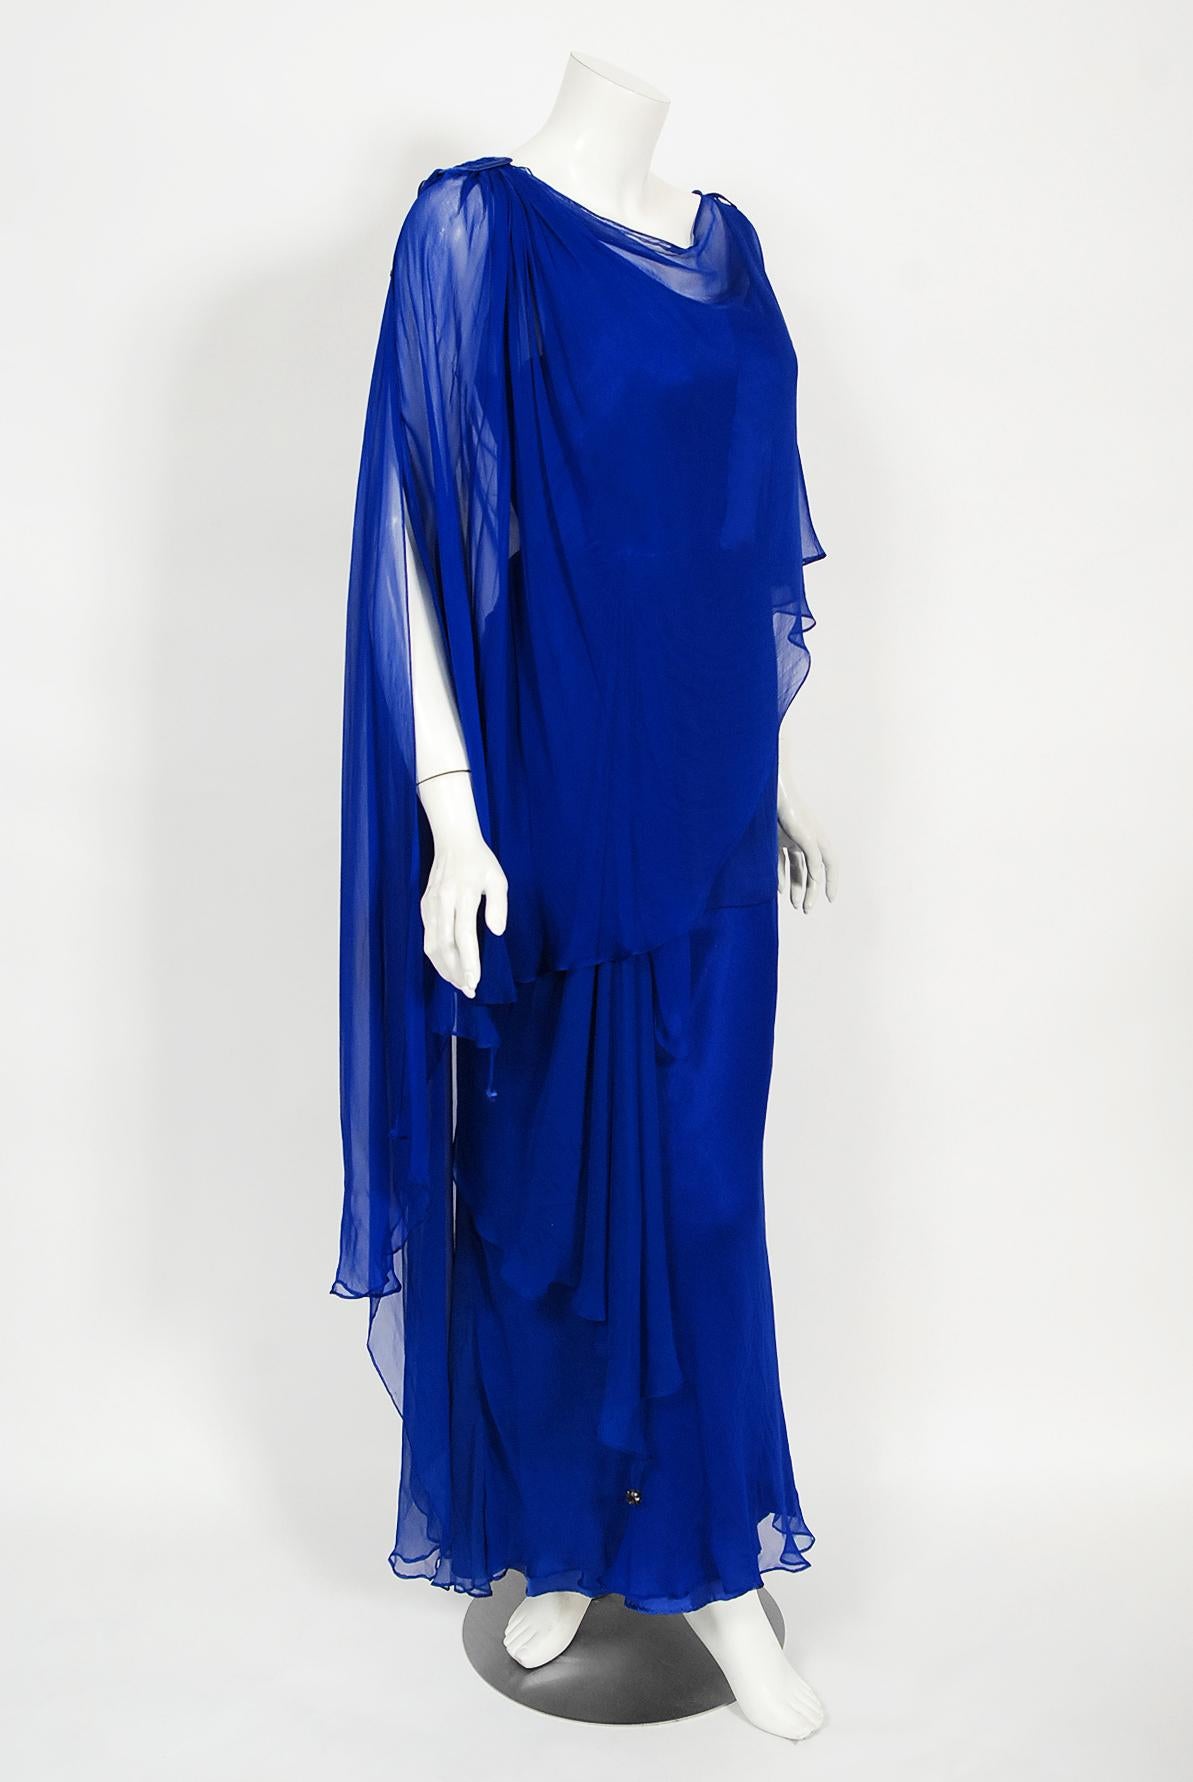 Bleu Givenchy - Robe caftan en mousseline de soie drapée bleu cobalt, haute couture, vintage 1967 en vente